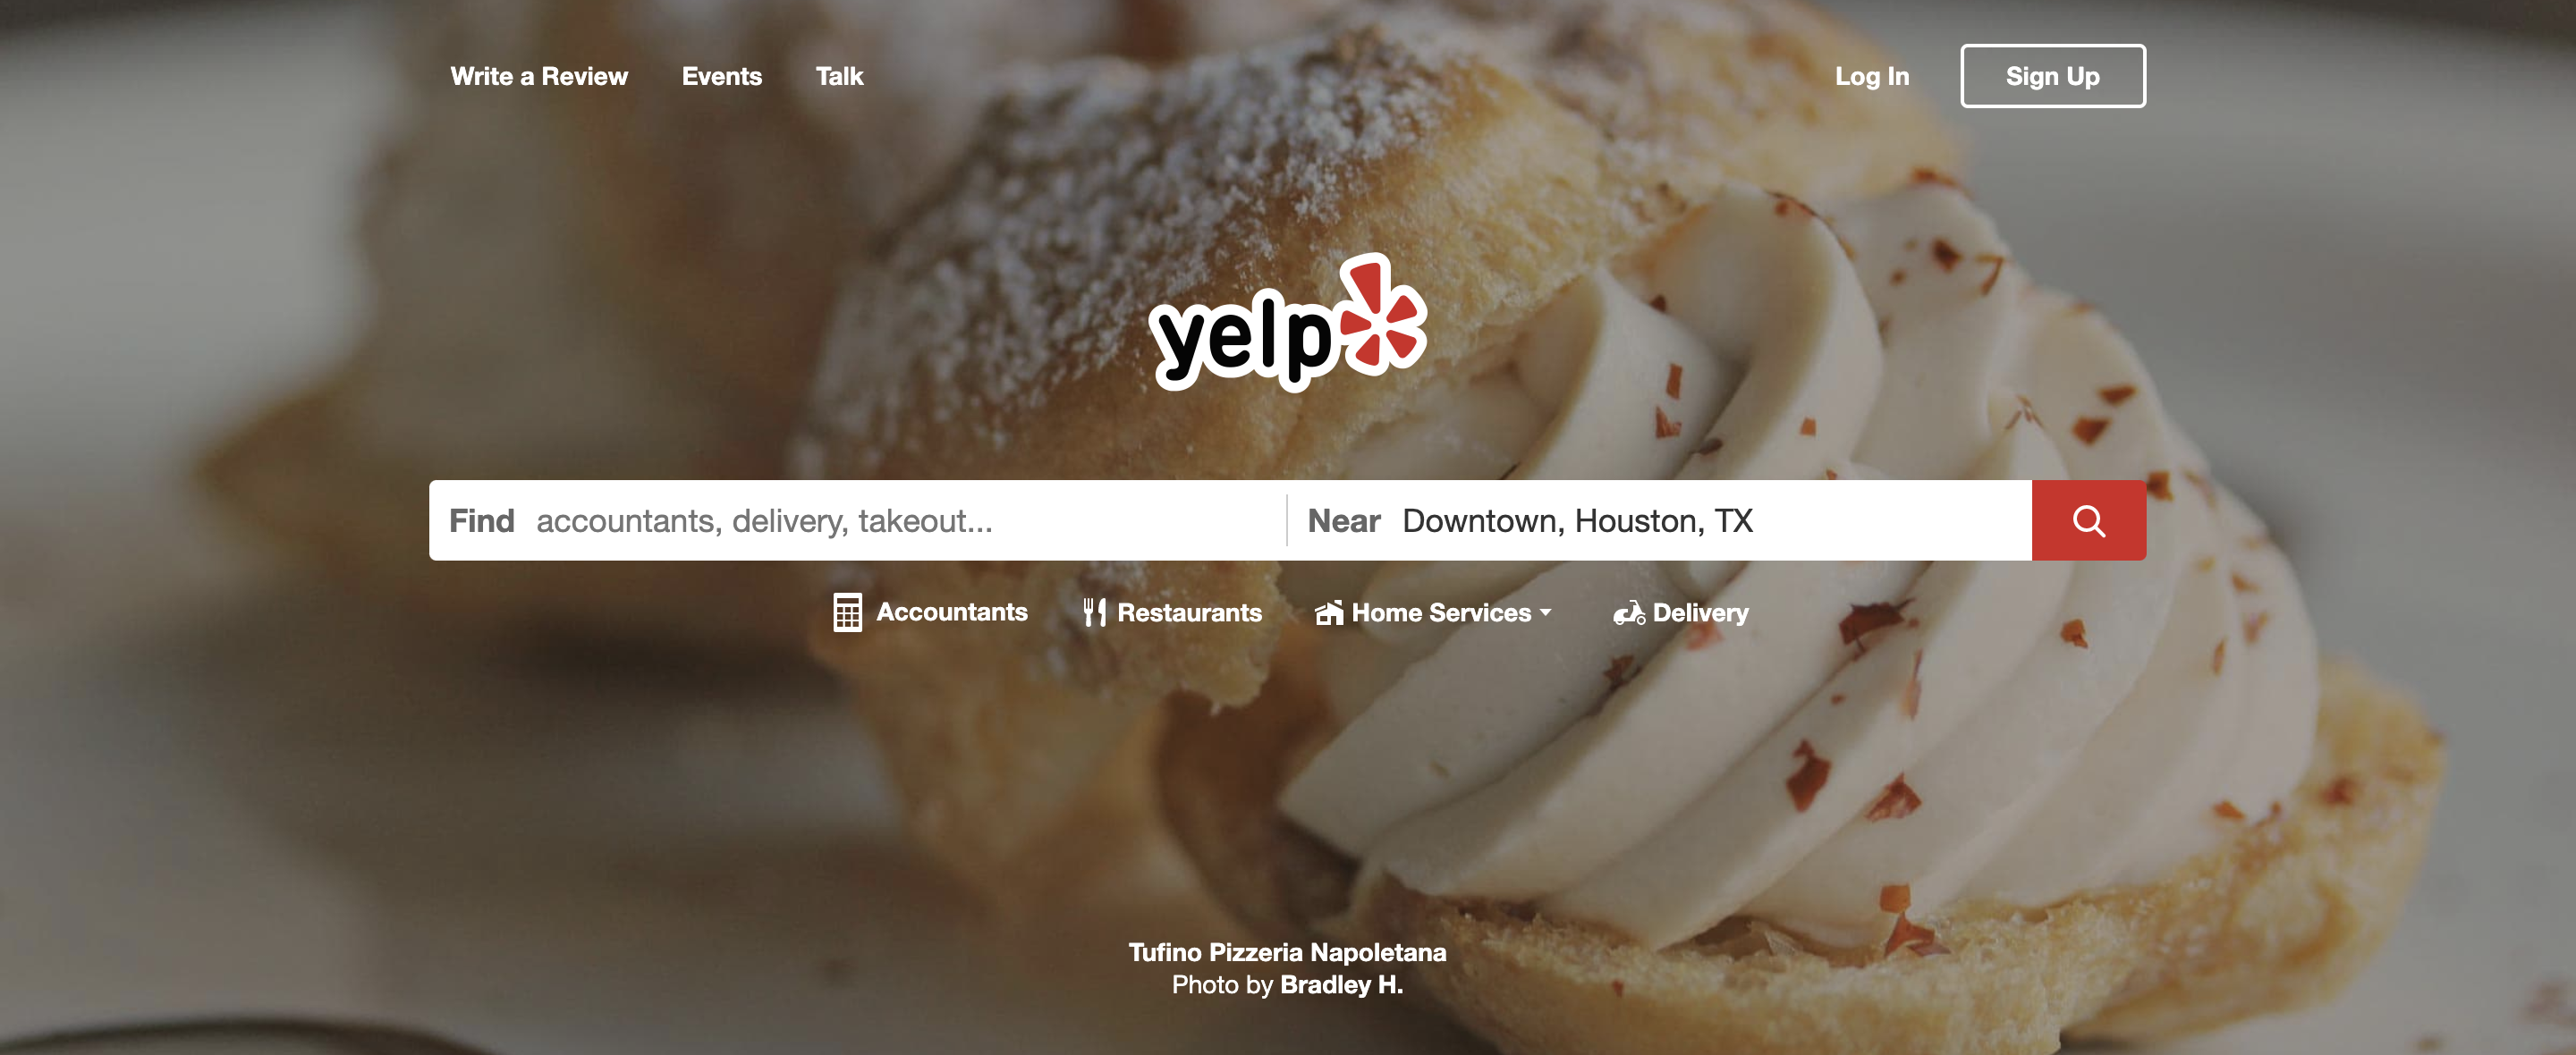 Yelp desktop homepage